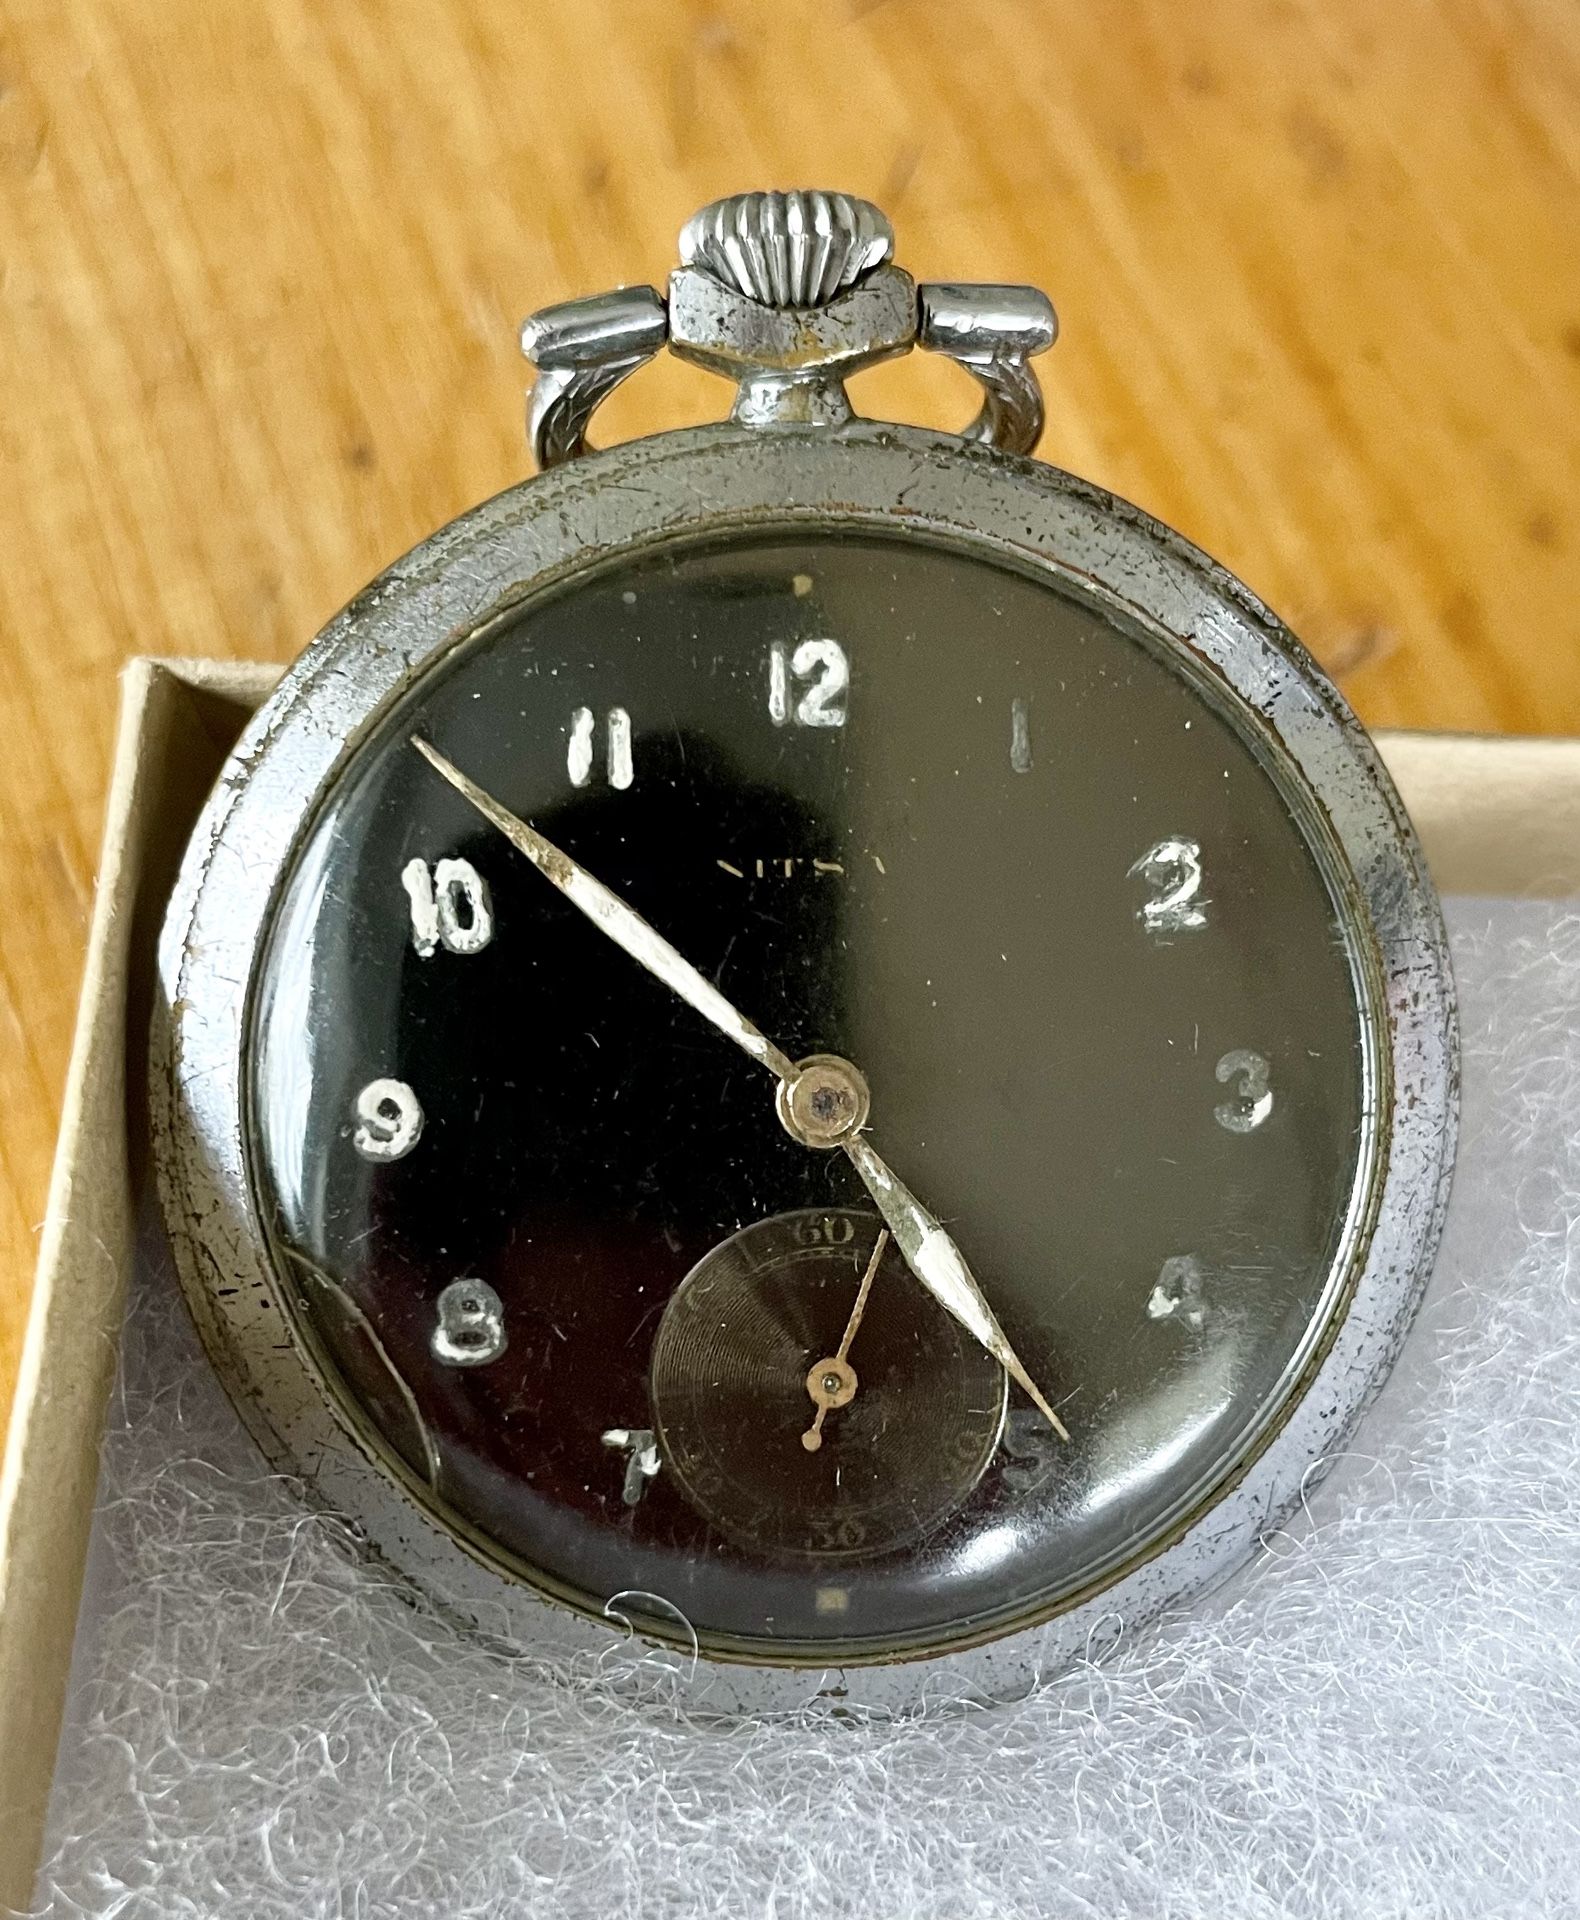 World War 2 German Pocket Watch